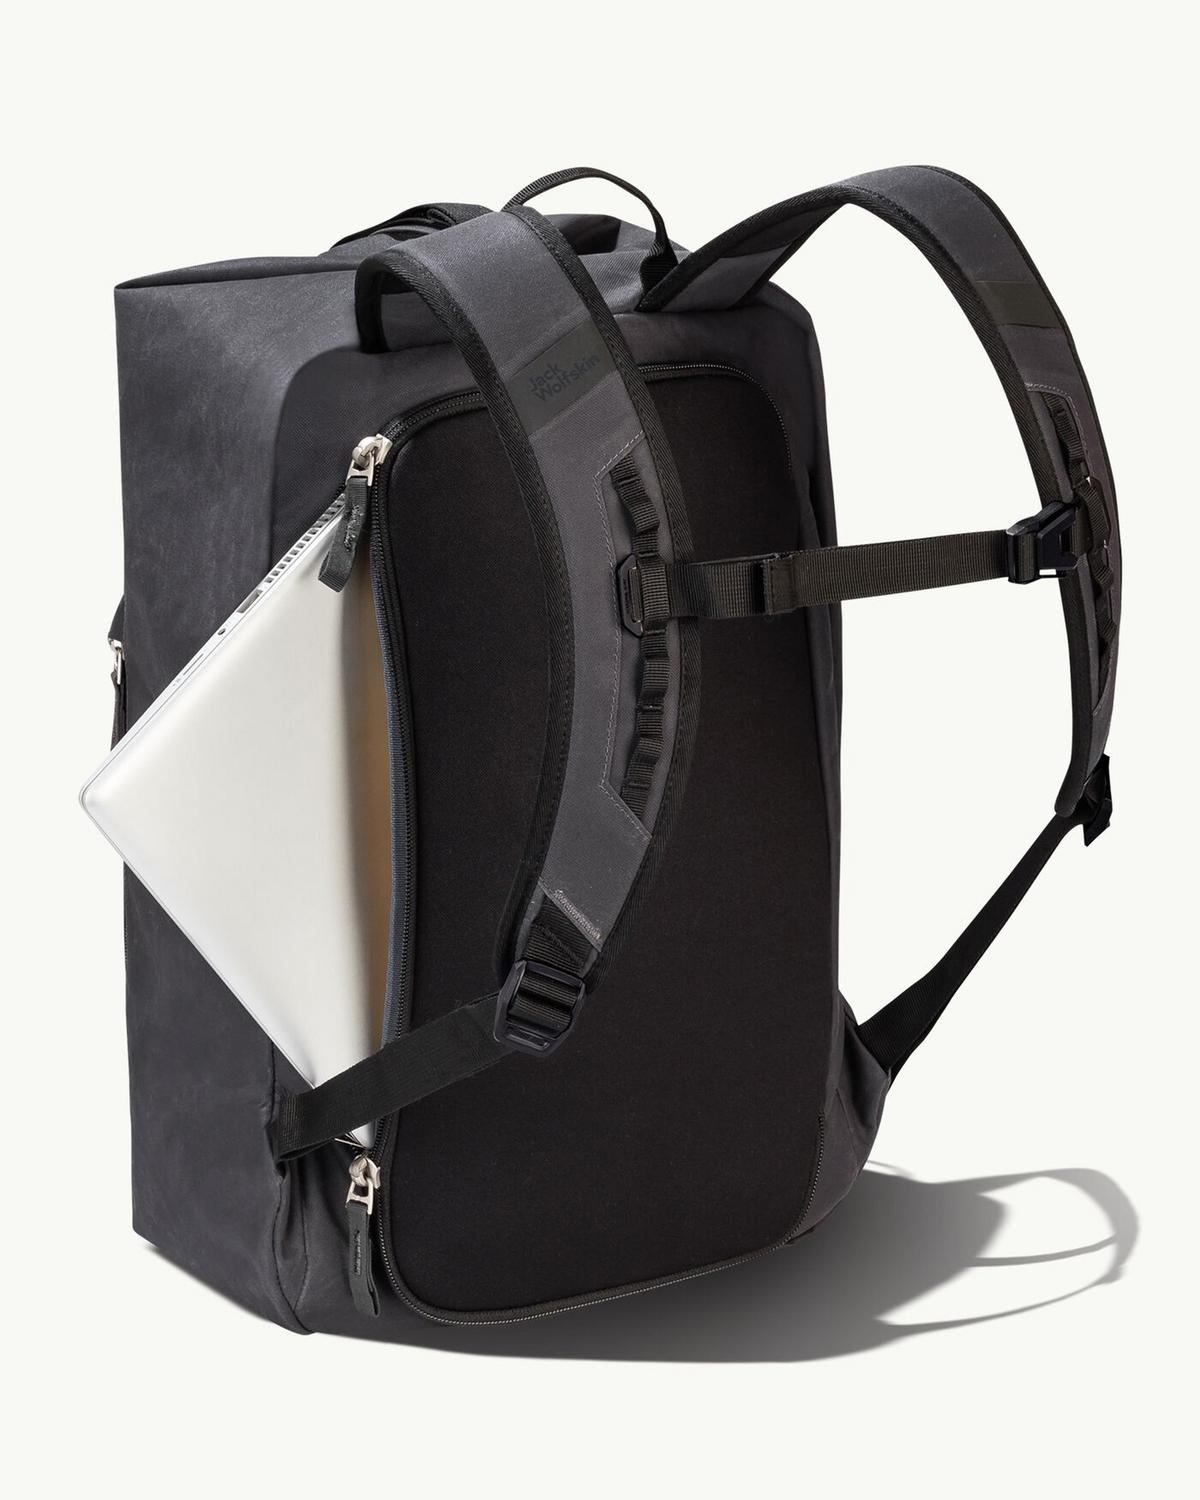 Jack Wolfskin 30L Traveltopia Weekender Bag -  Charcoal